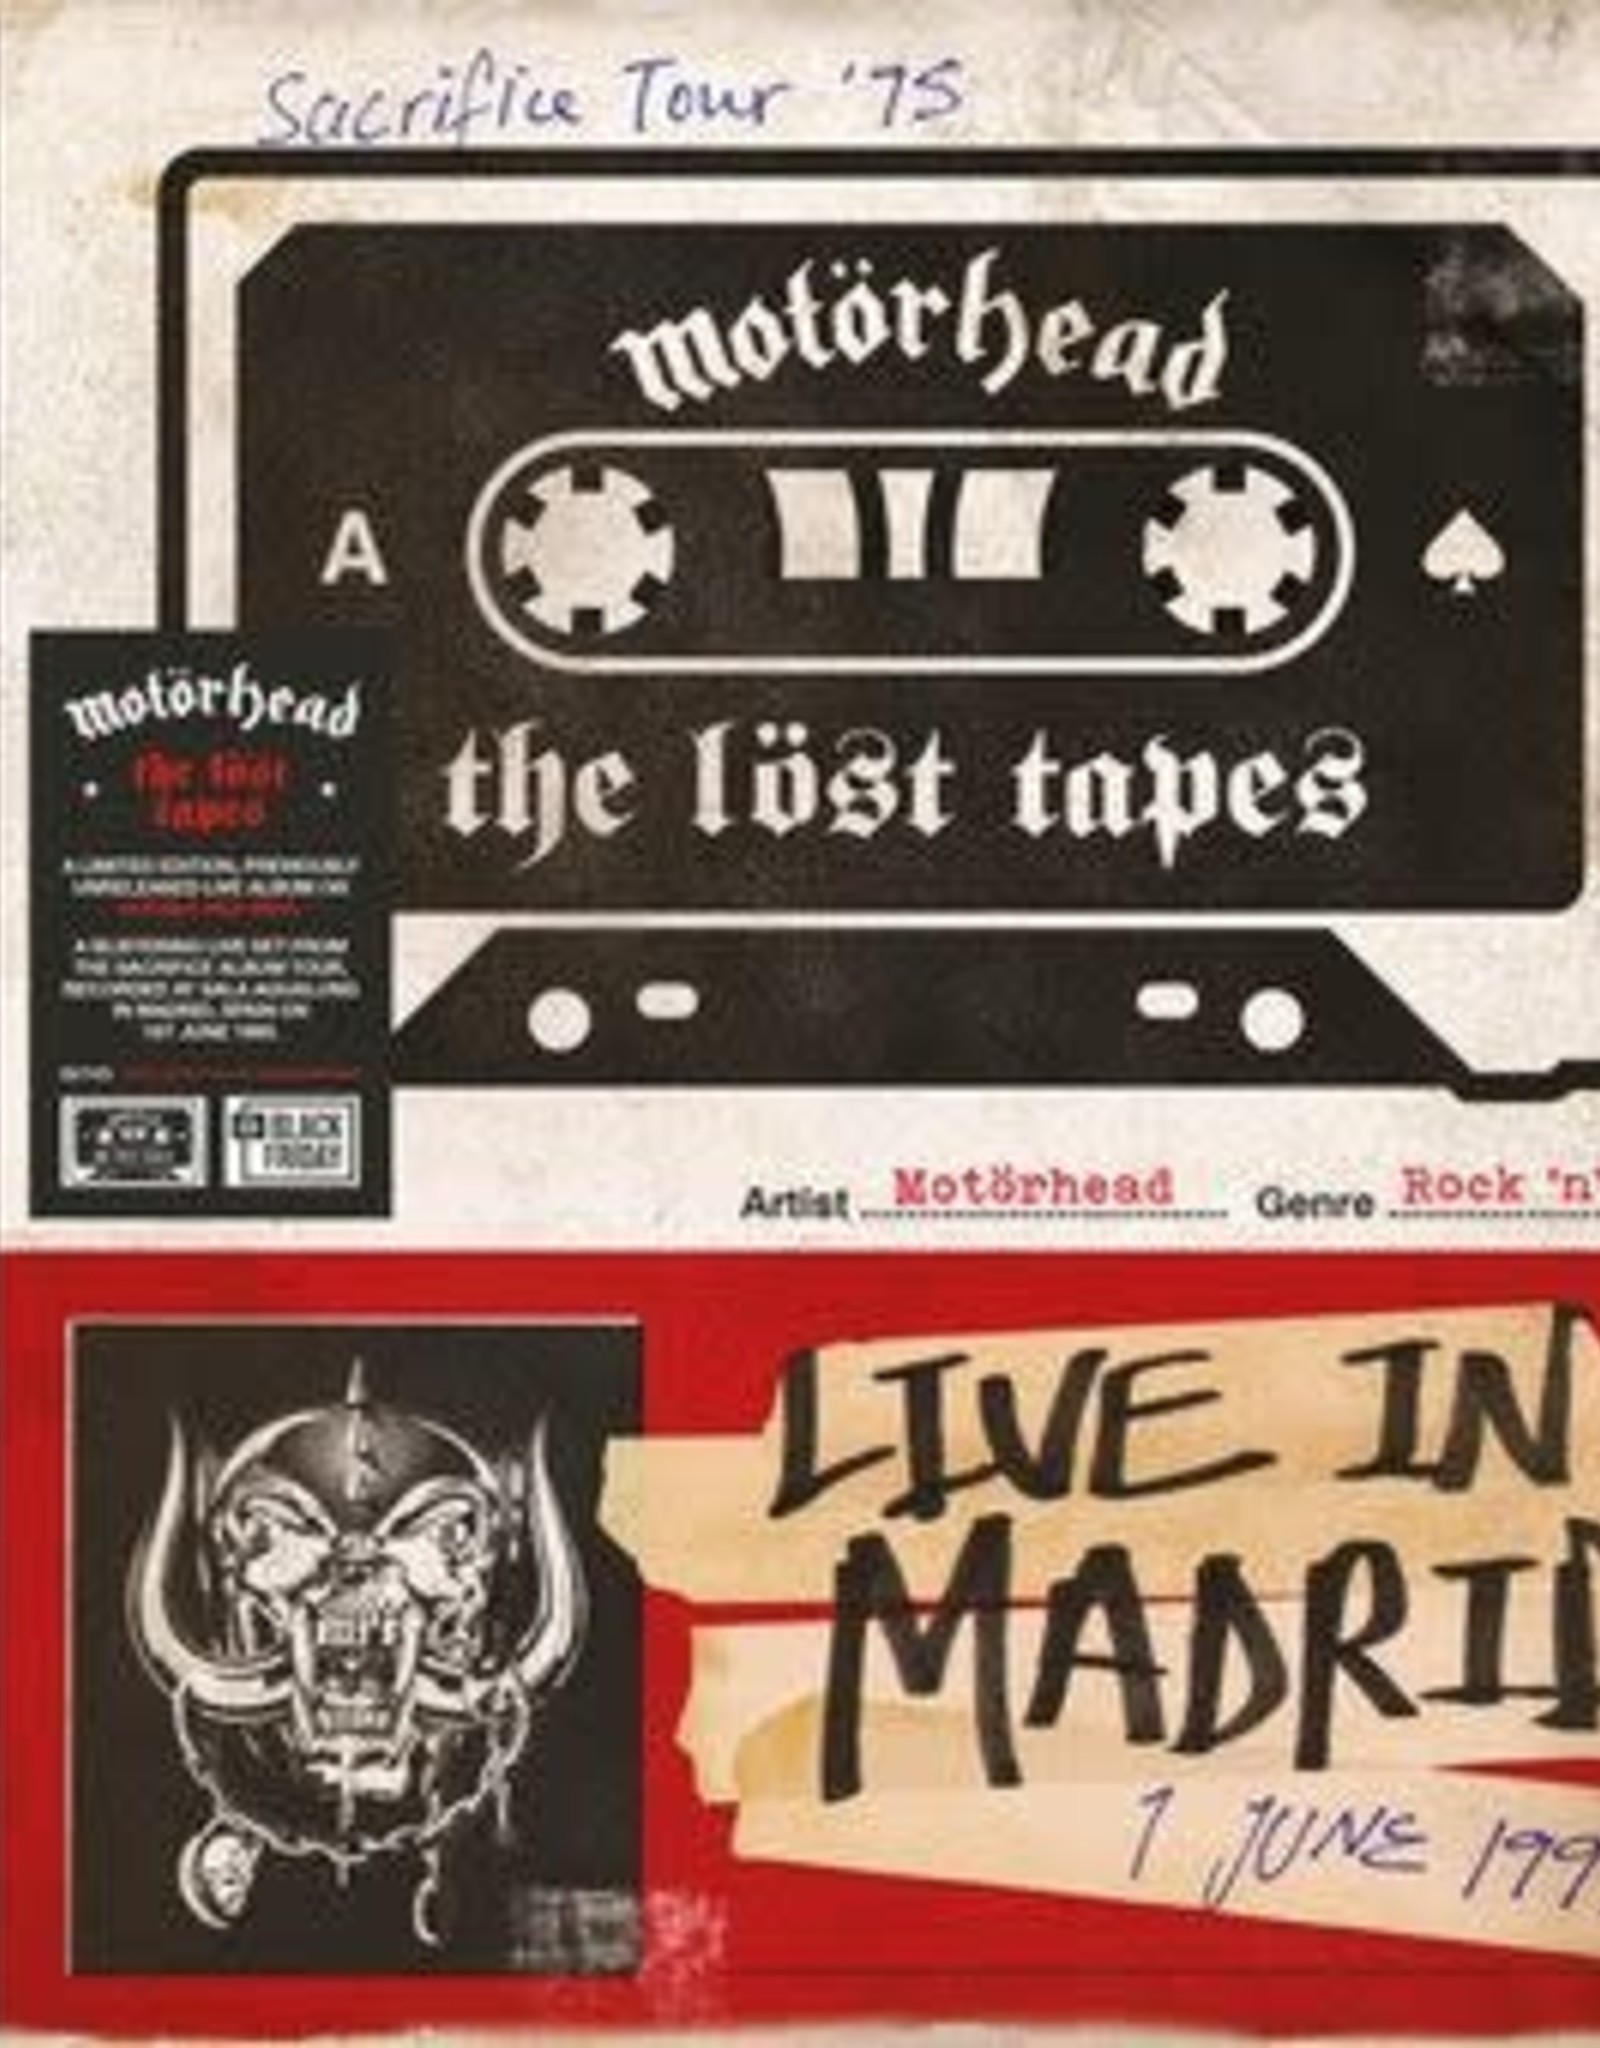 Motörhead - The Lost Tapes Vol.1 (Live In Madrid 1995) (RSDBF 2021)